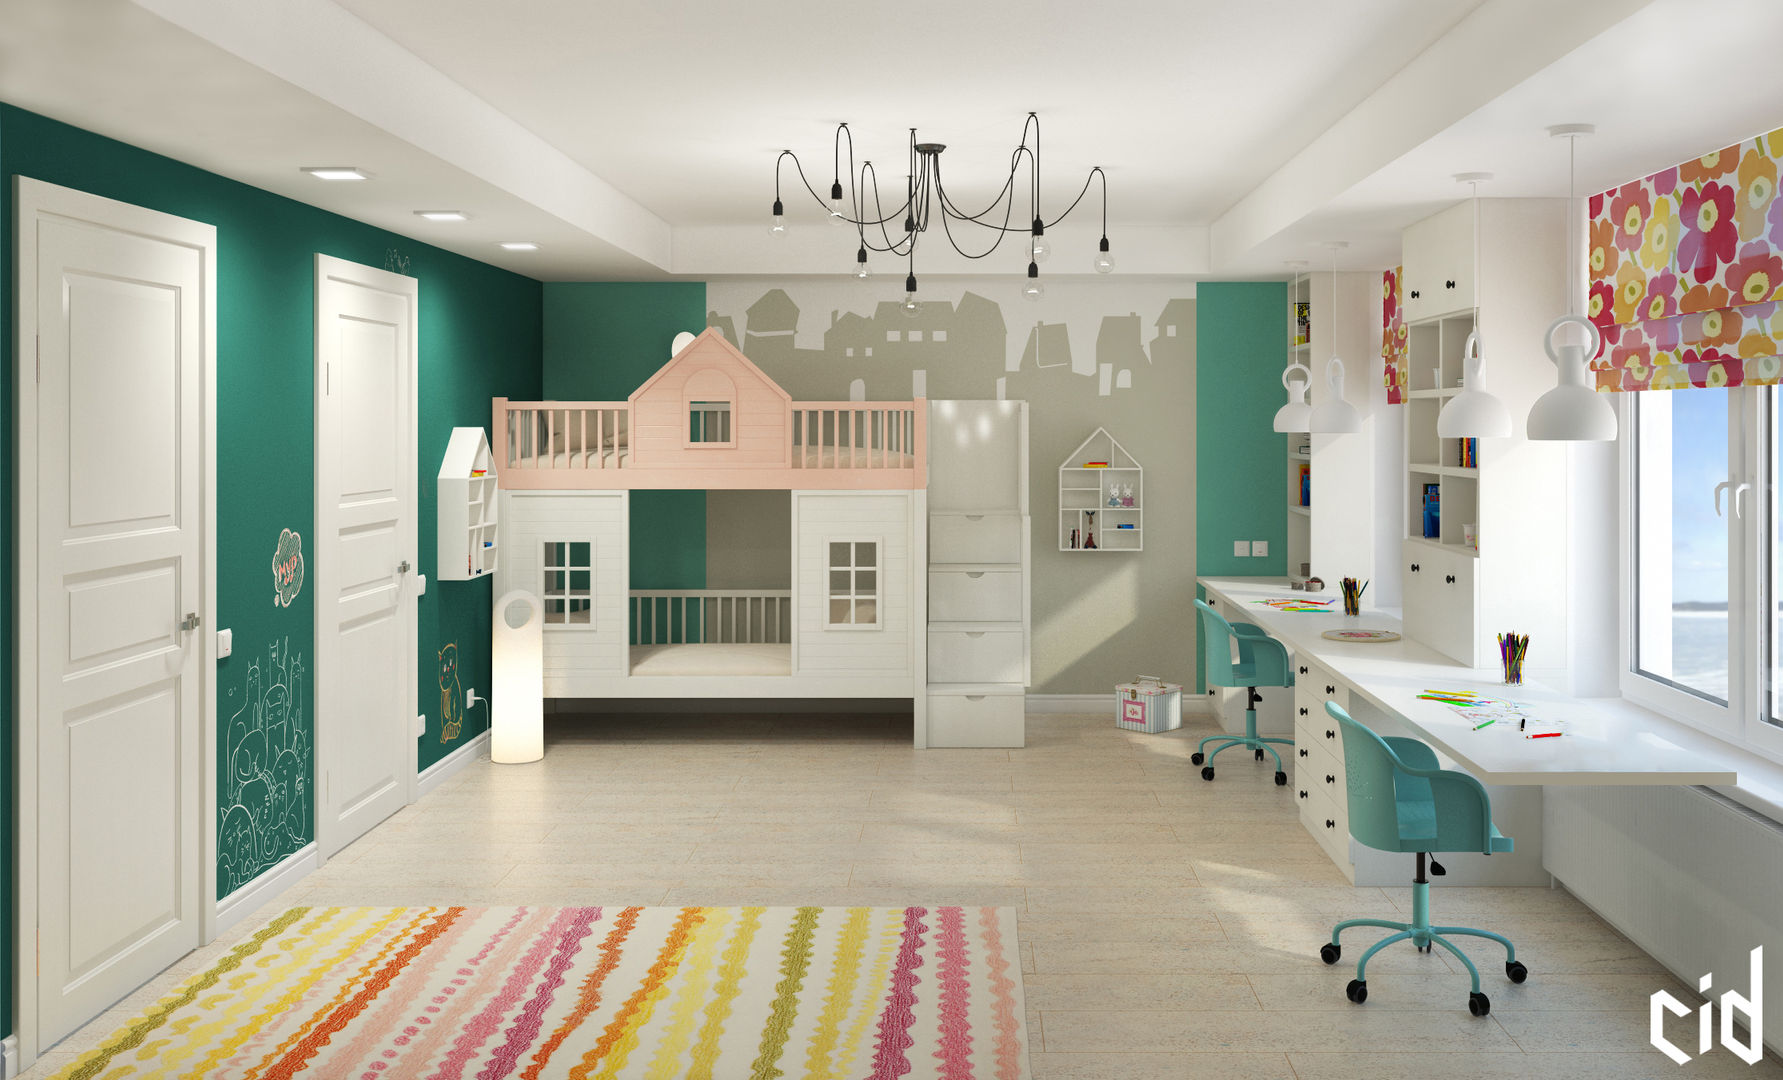 Детская для двух детей, Center of interior design Center of interior design Nursery/kid’s room